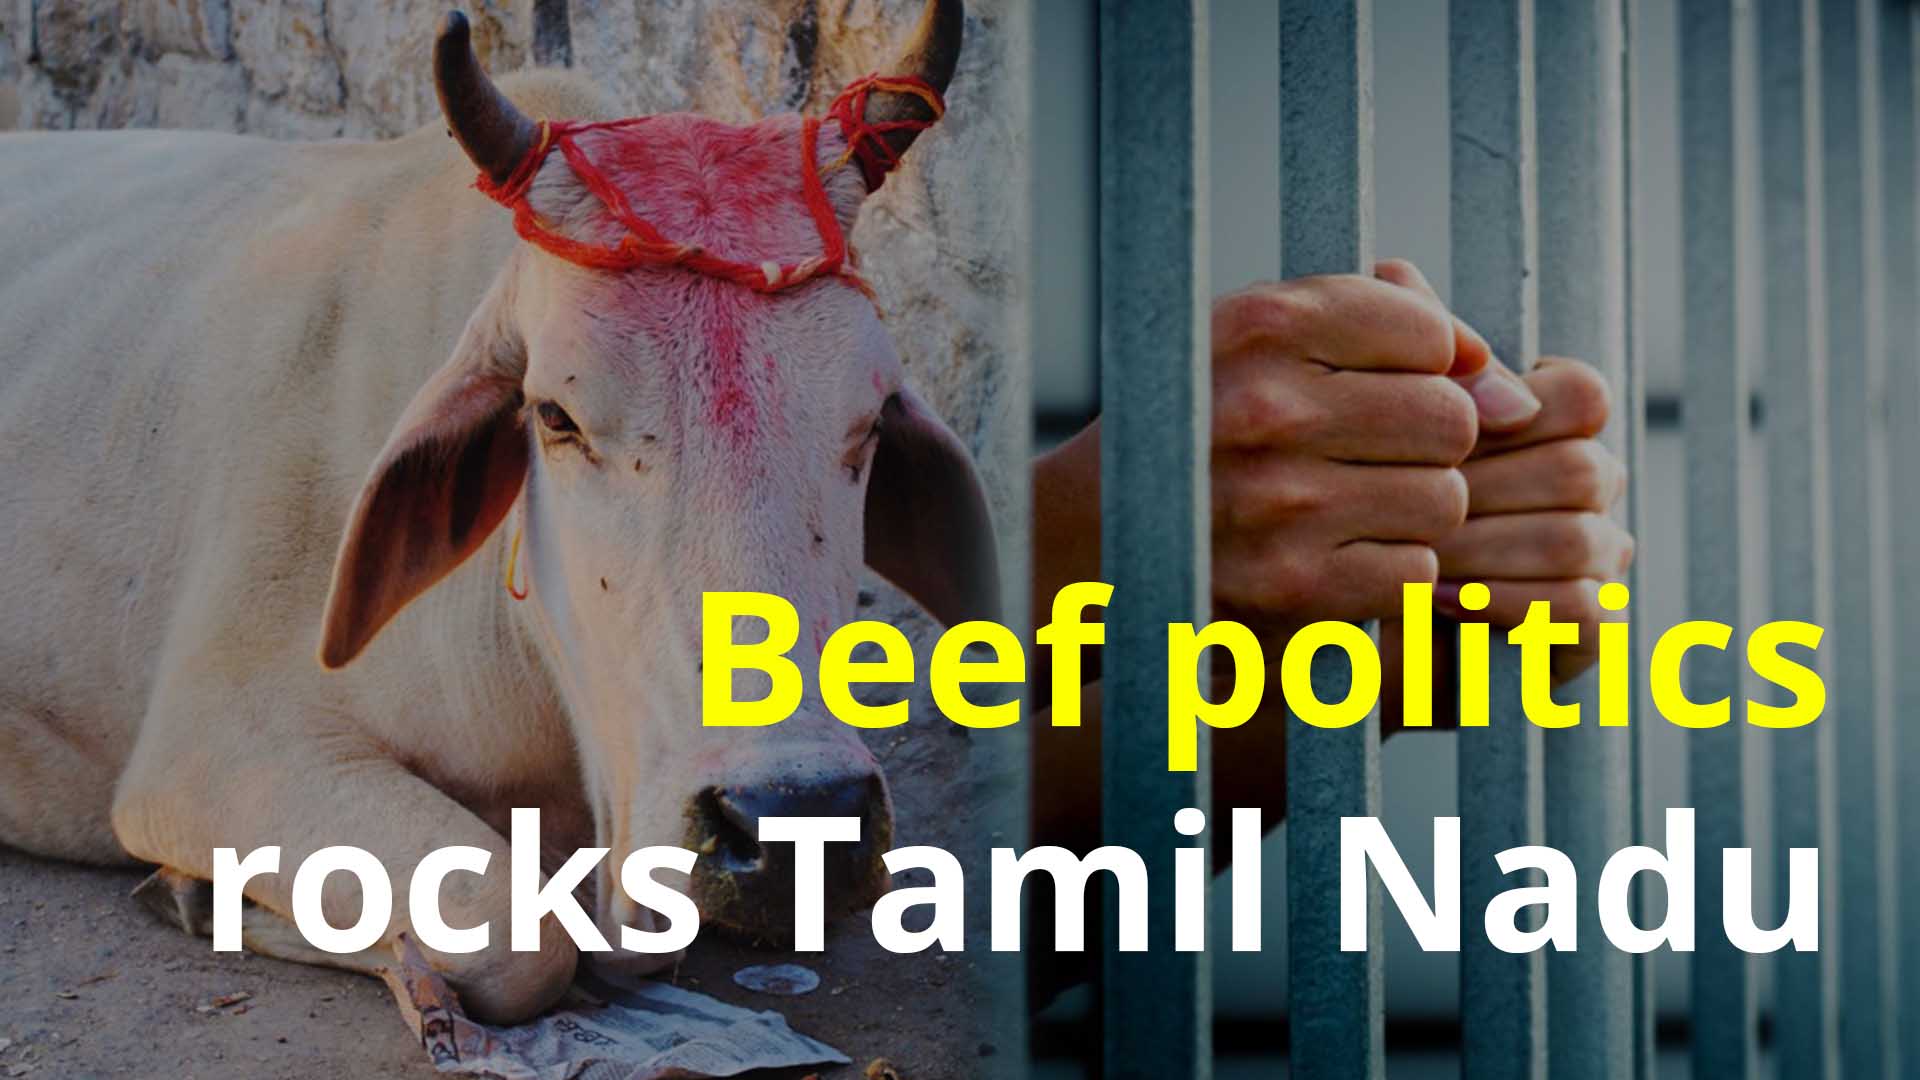 Beef politics rocks Tamil Nadu